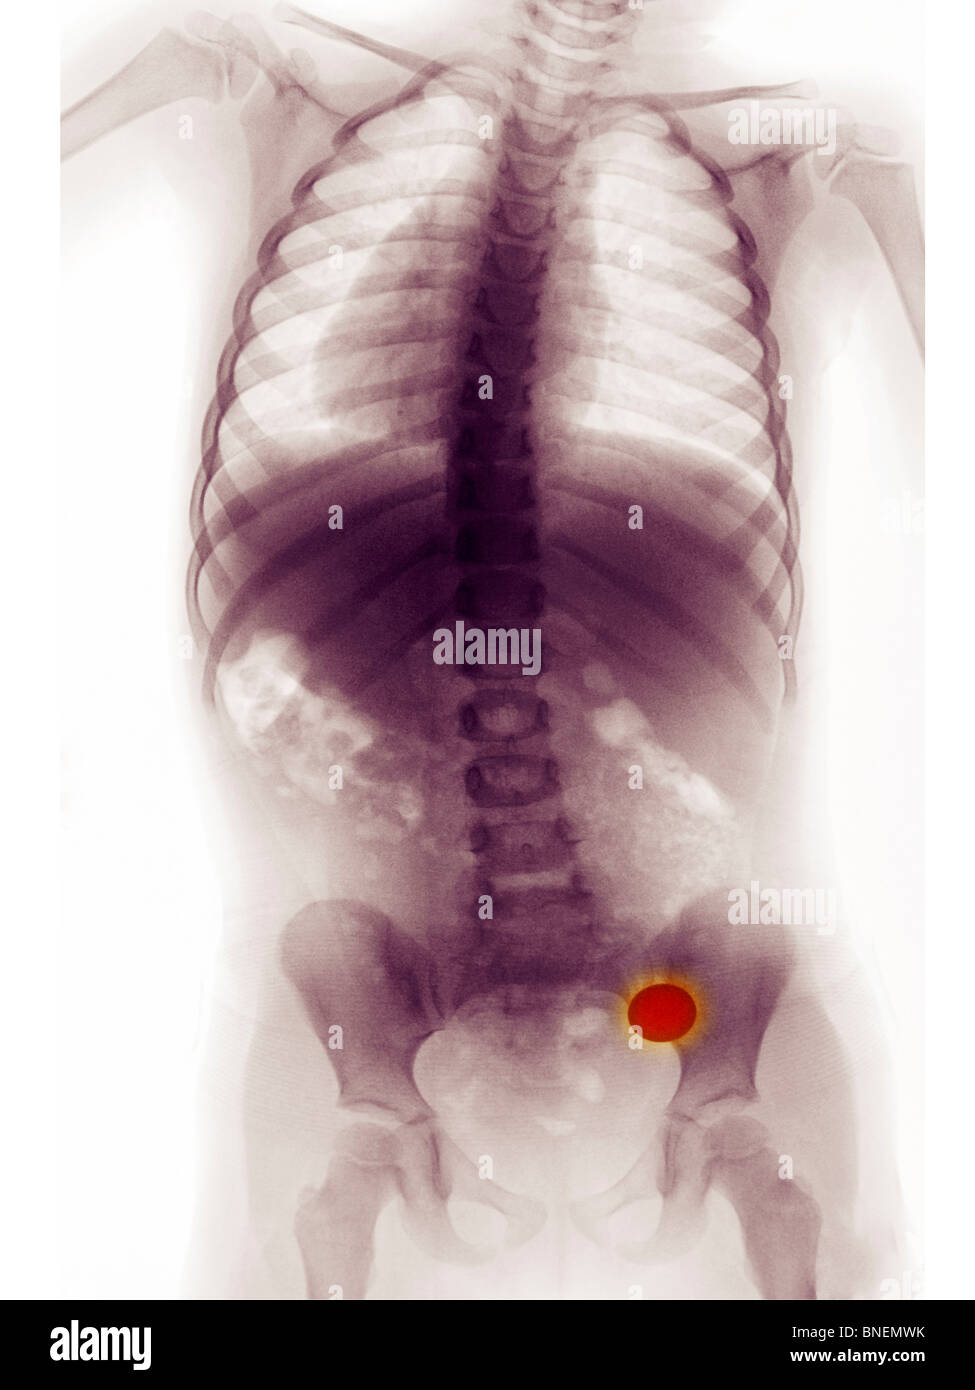 Bauch x-ray ein 3 Jahre altes Mädchen, das eine Münze verschluckt Stockfoto